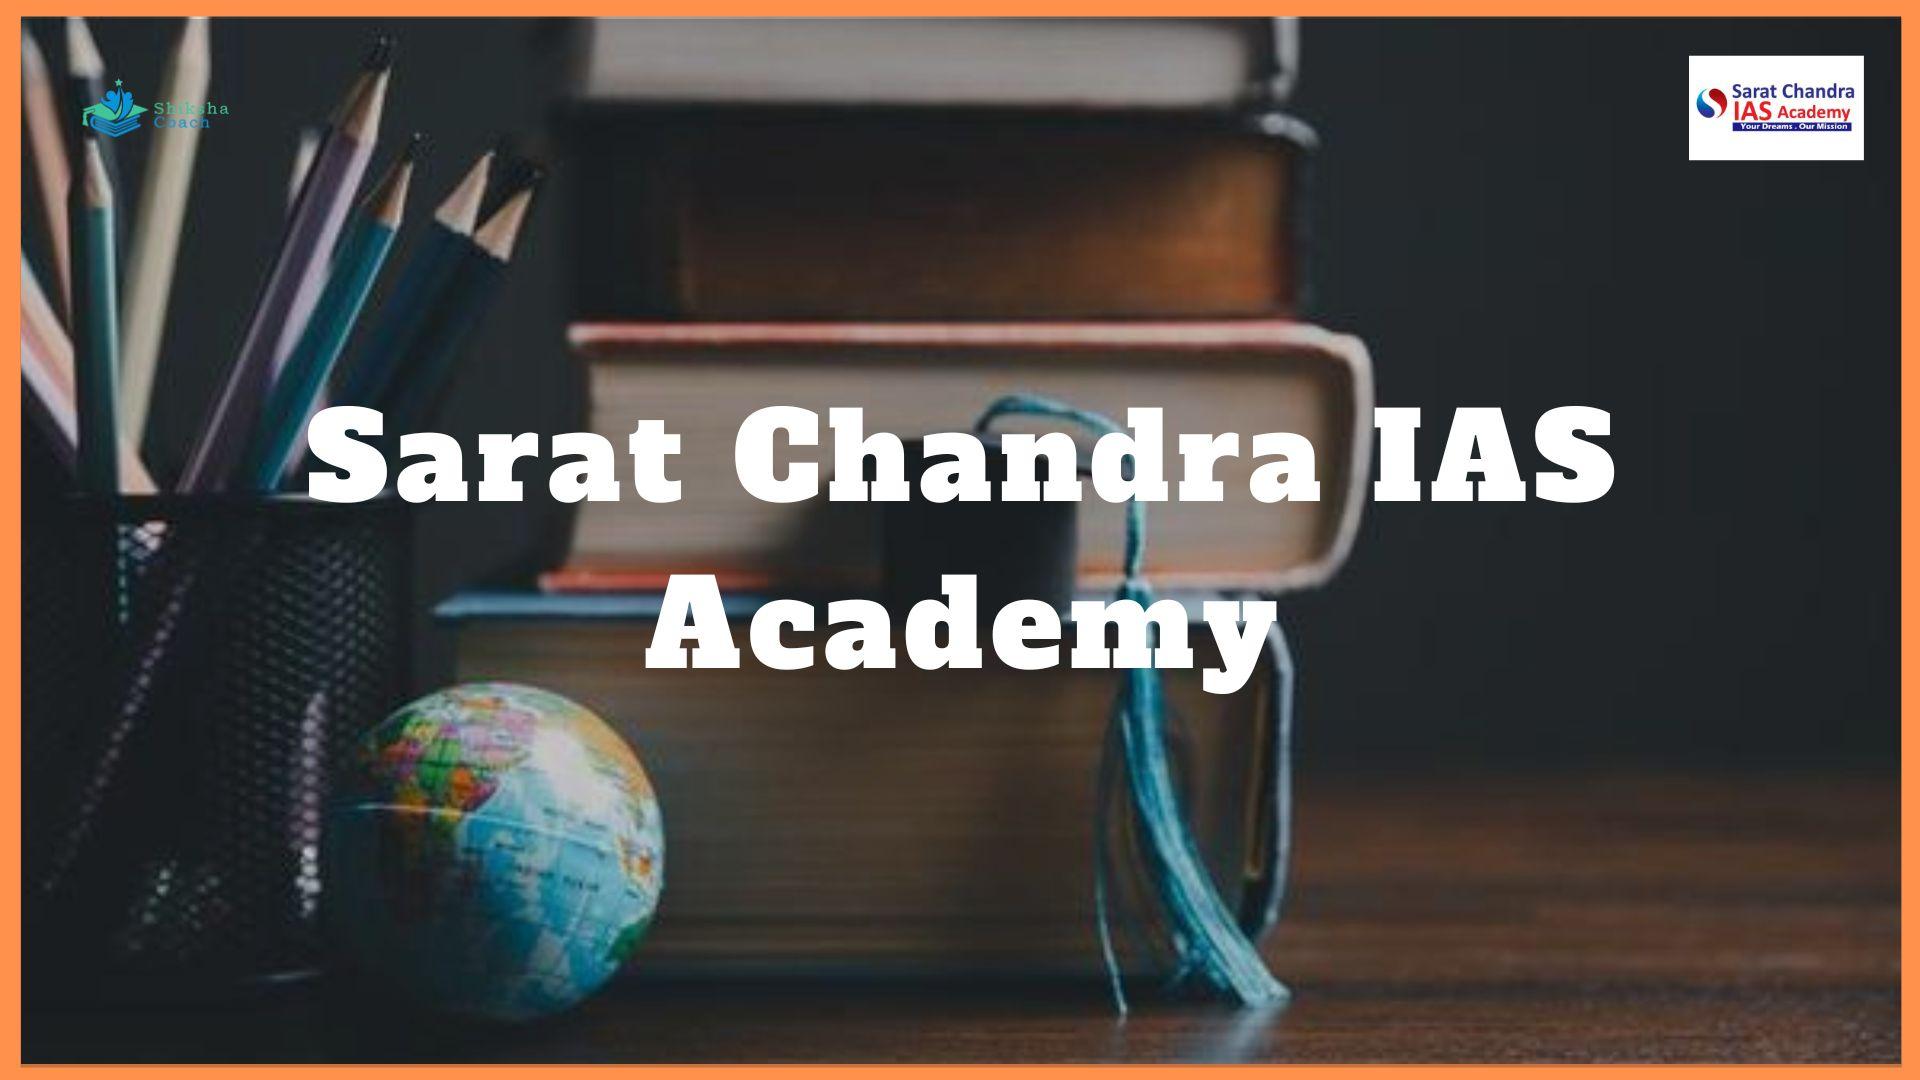 Sarat Chandra IAS Academy, Hyderabad